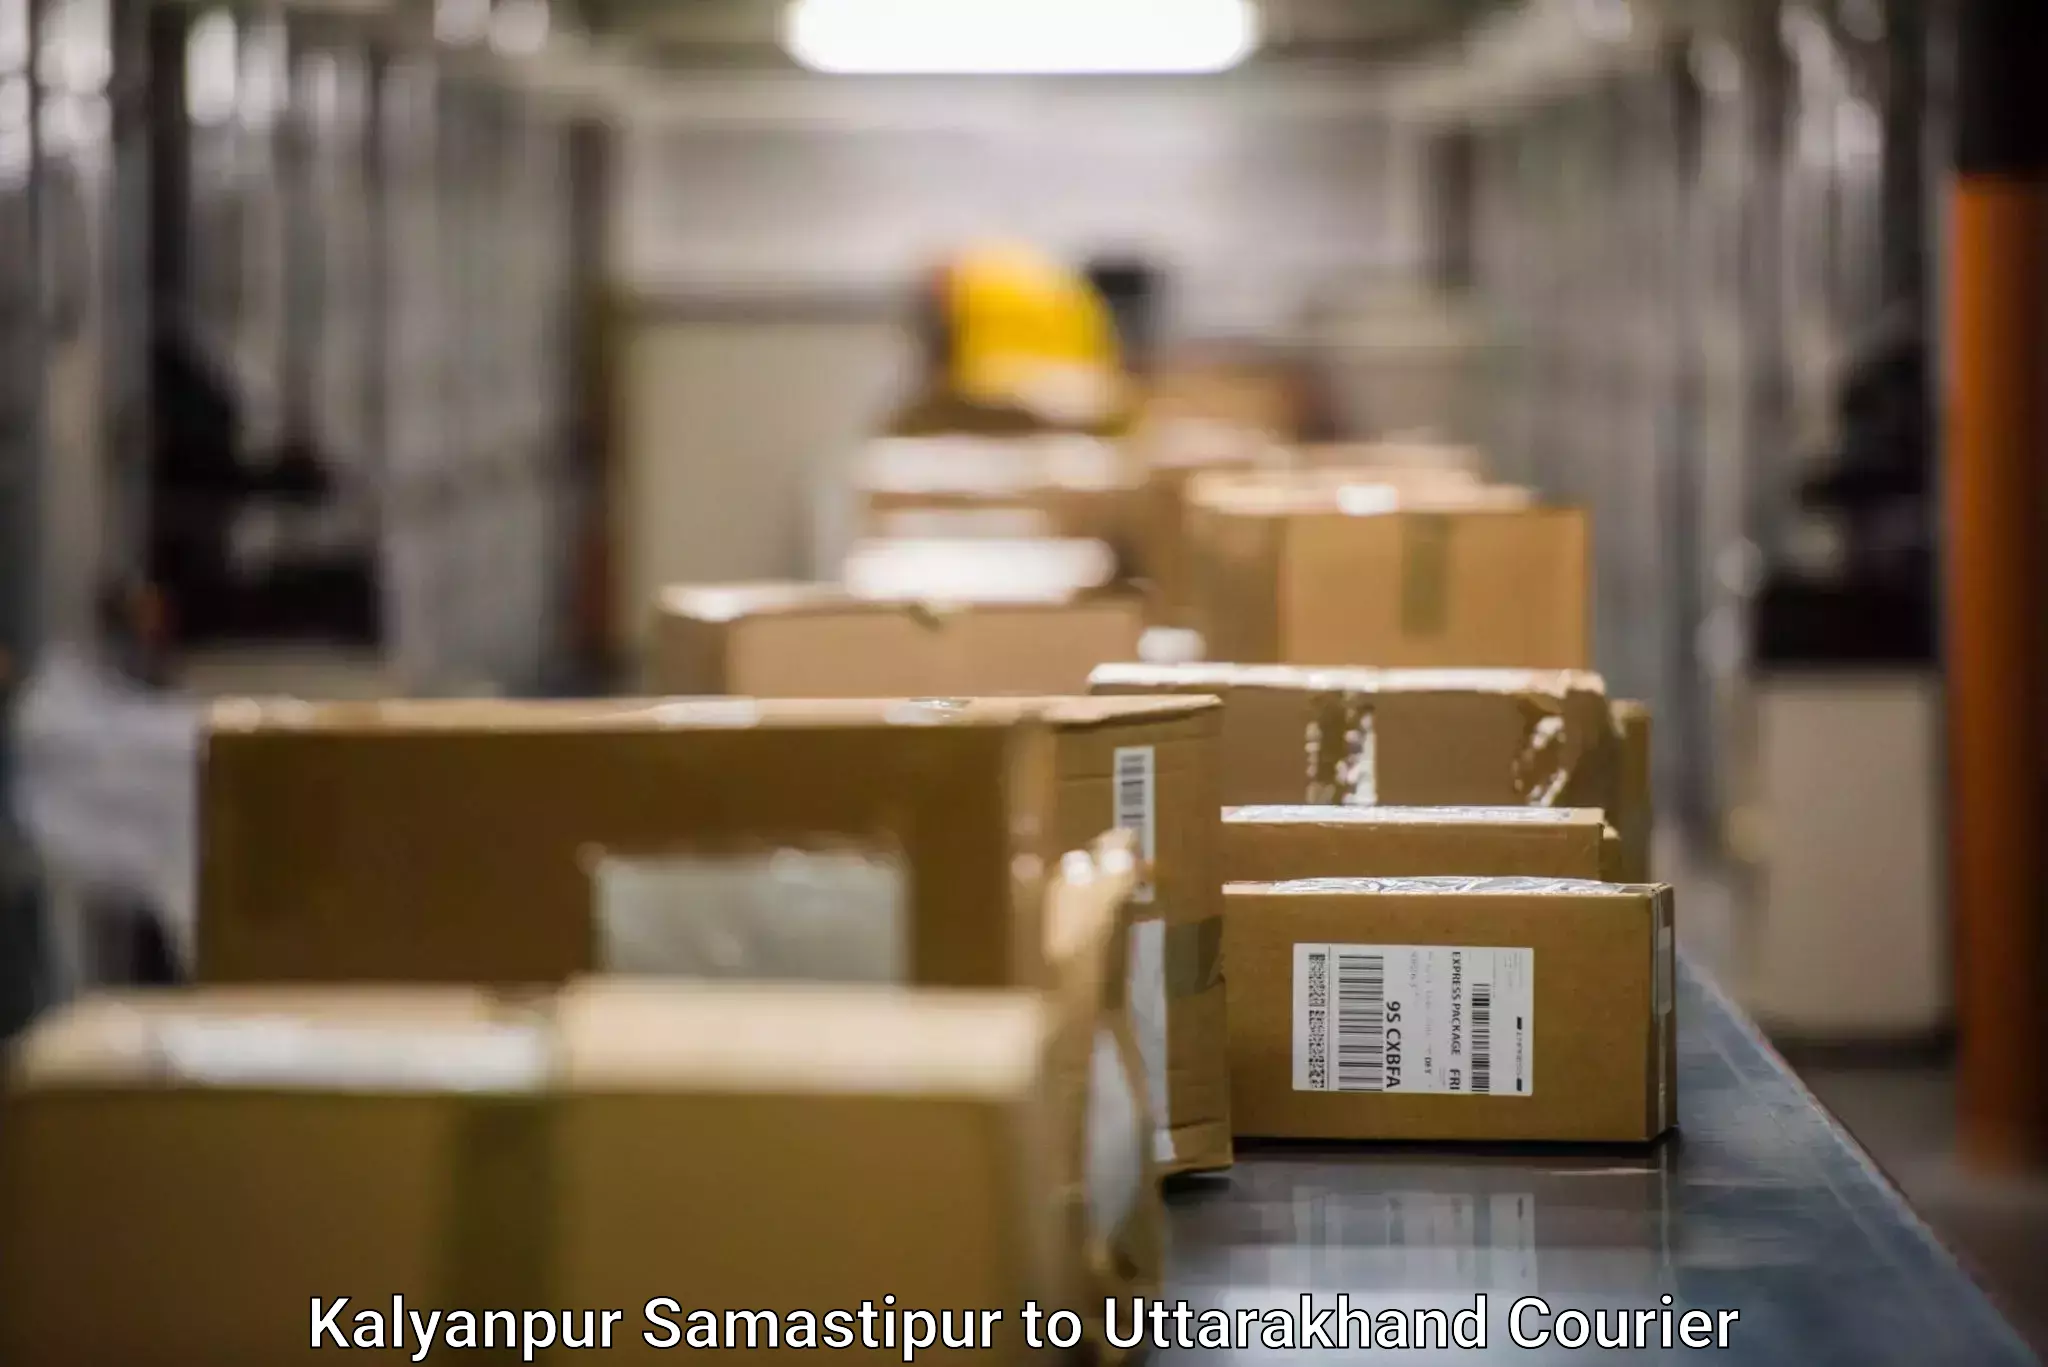 Efficient parcel transport in Kalyanpur Samastipur to Haridwar